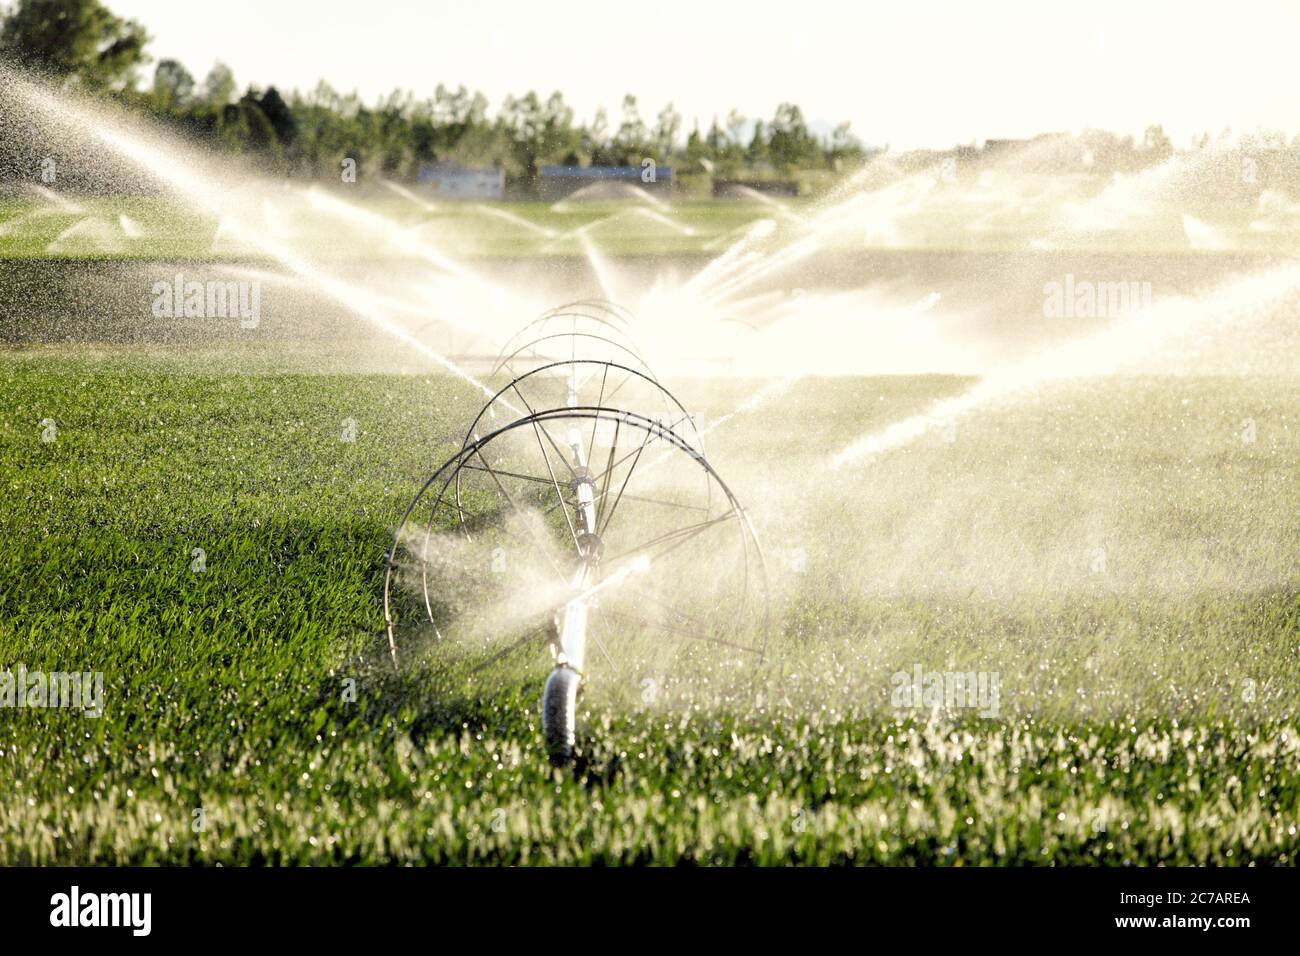 A wheel line sprinkler watering a wheat field in the fertile farm fields of Idaho. Stock Photo